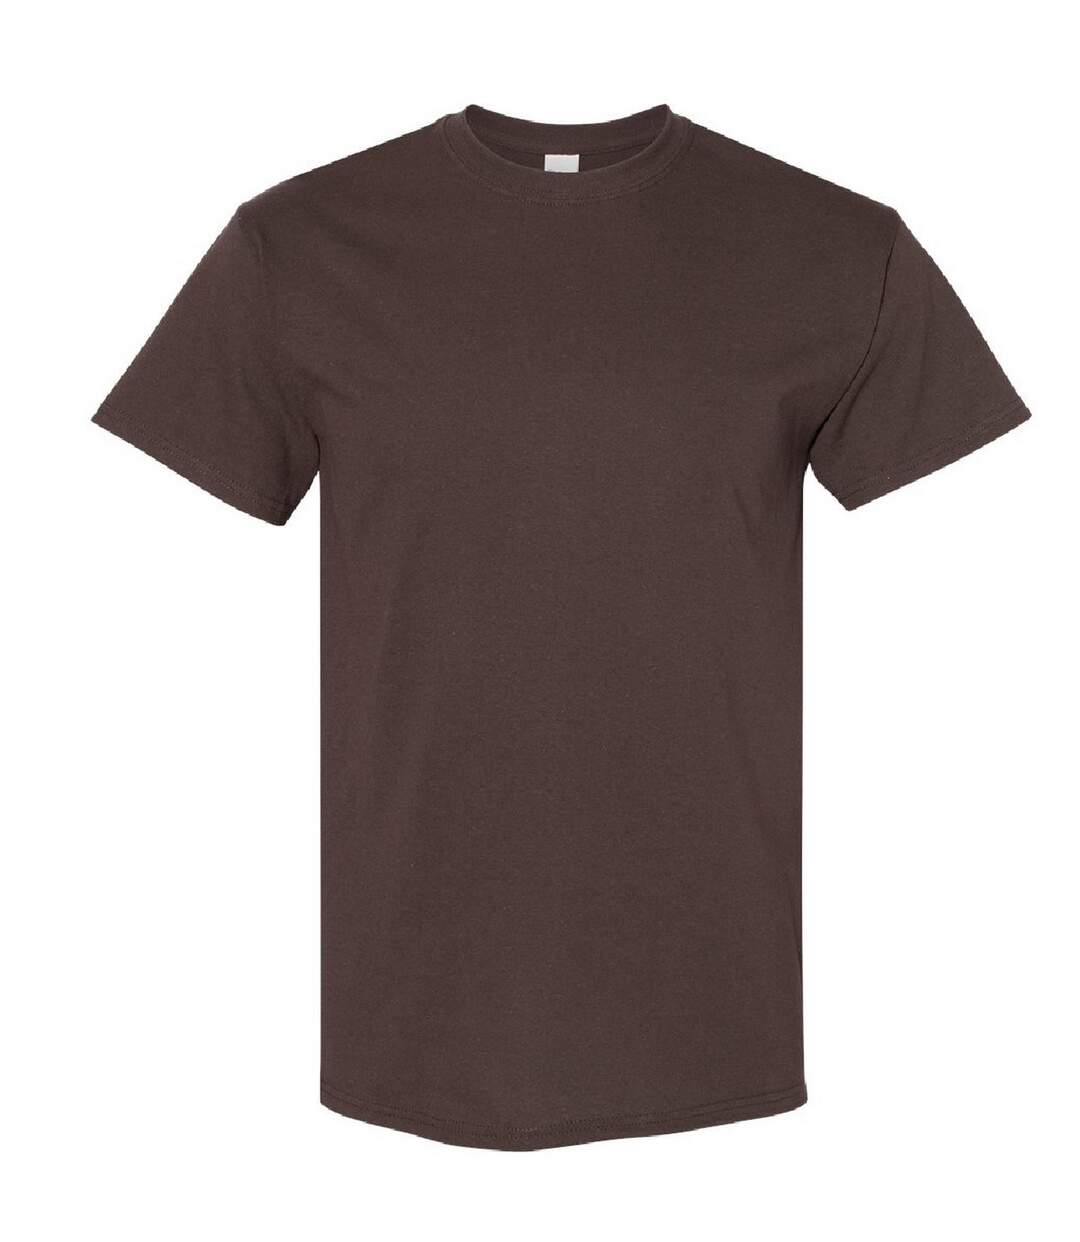 Gildan - T-shirt à manches courtes - Homme (Marron foncé) - UTBC481